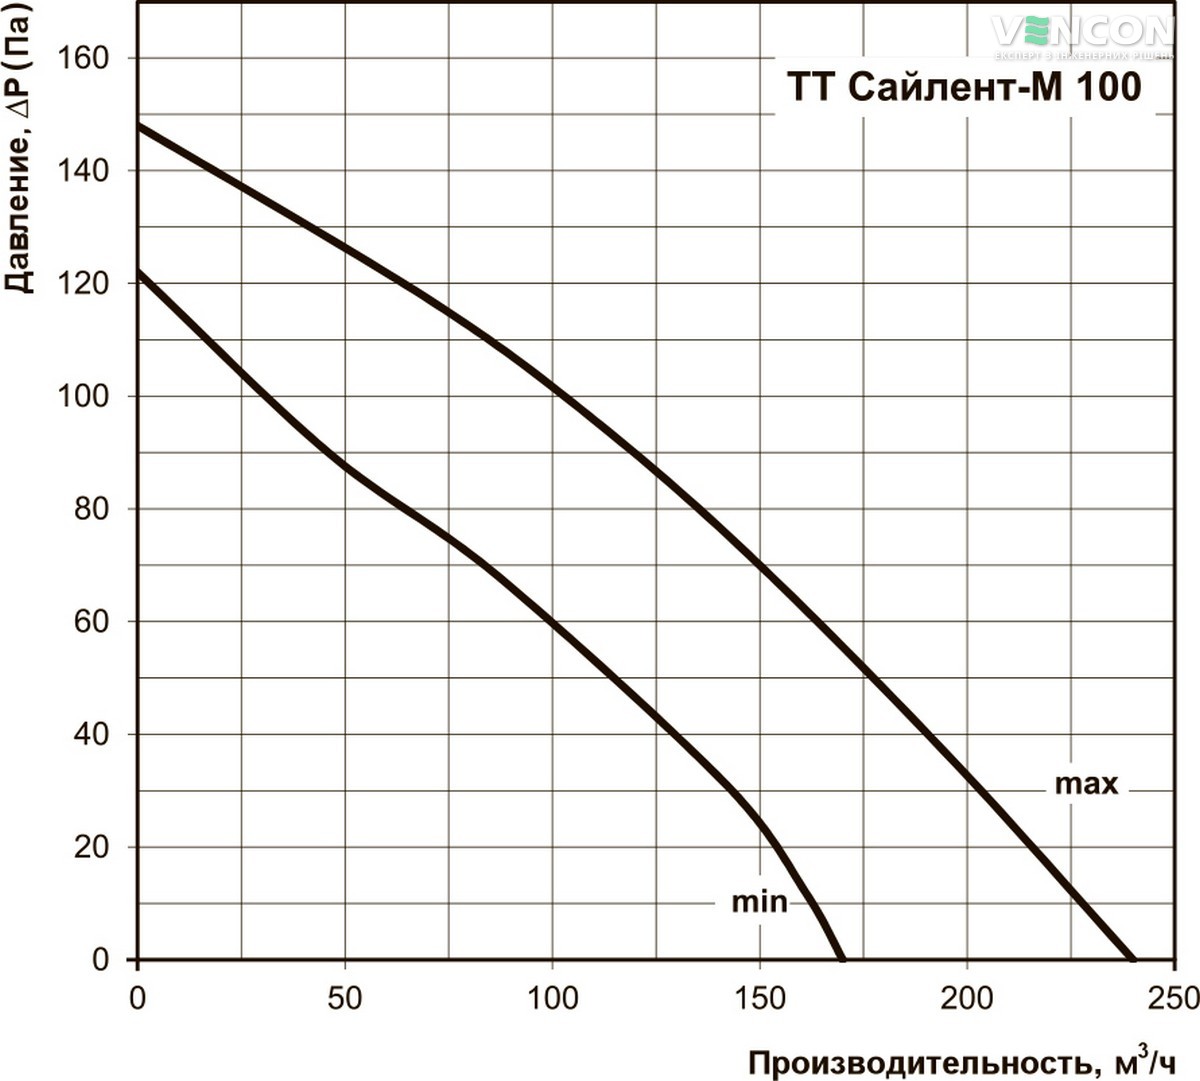 Вентс ТТ Сайлент-М 100 Діаграма продуктивності